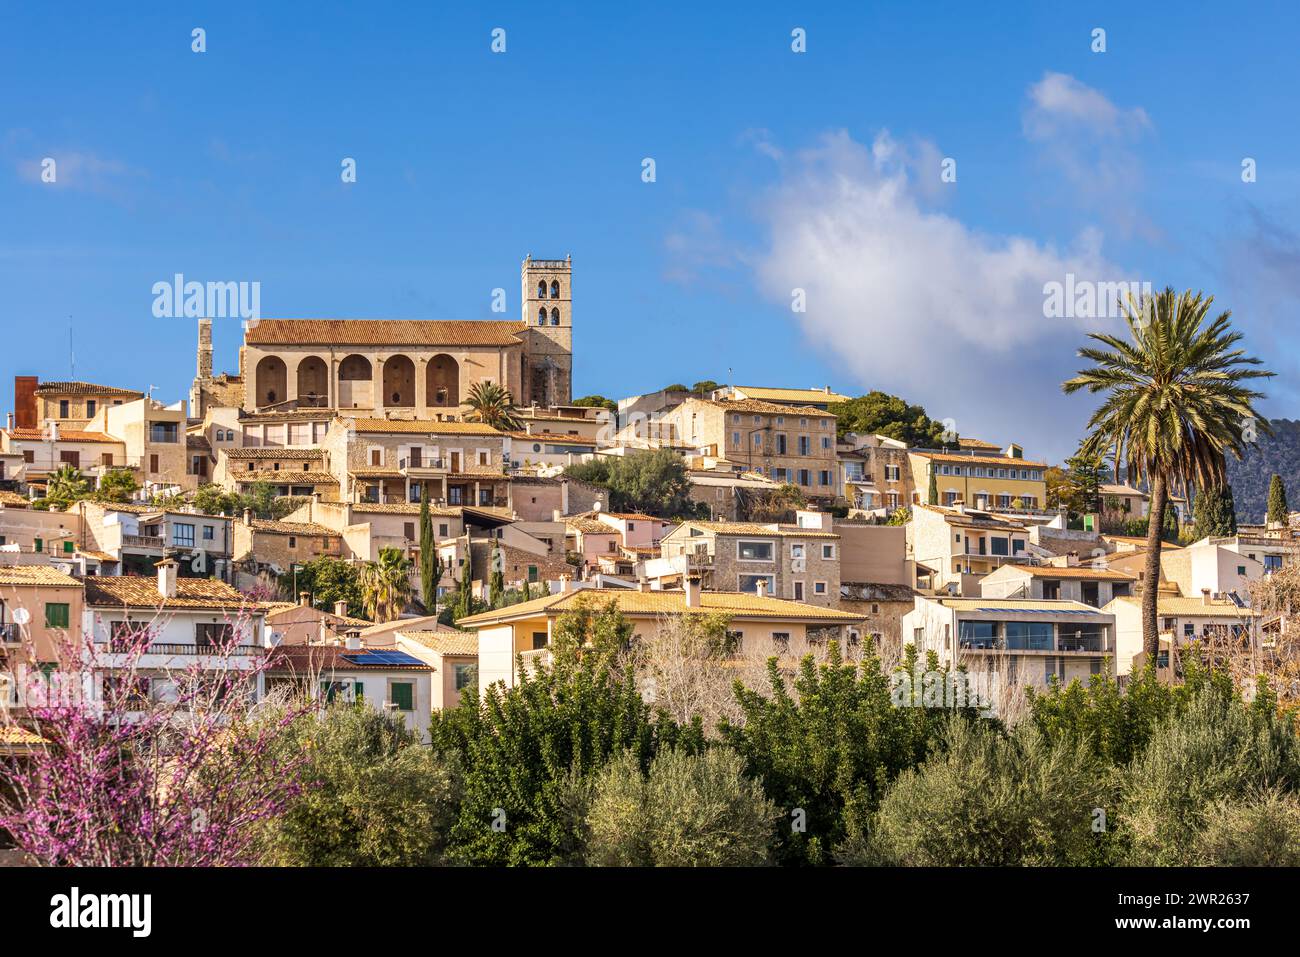 Villagescape von Selva mit gotisch-katholischer Pfarrkirche Església de Sant Llorenc, Mallorca, Balearen, Spanien, Europa Stockfoto